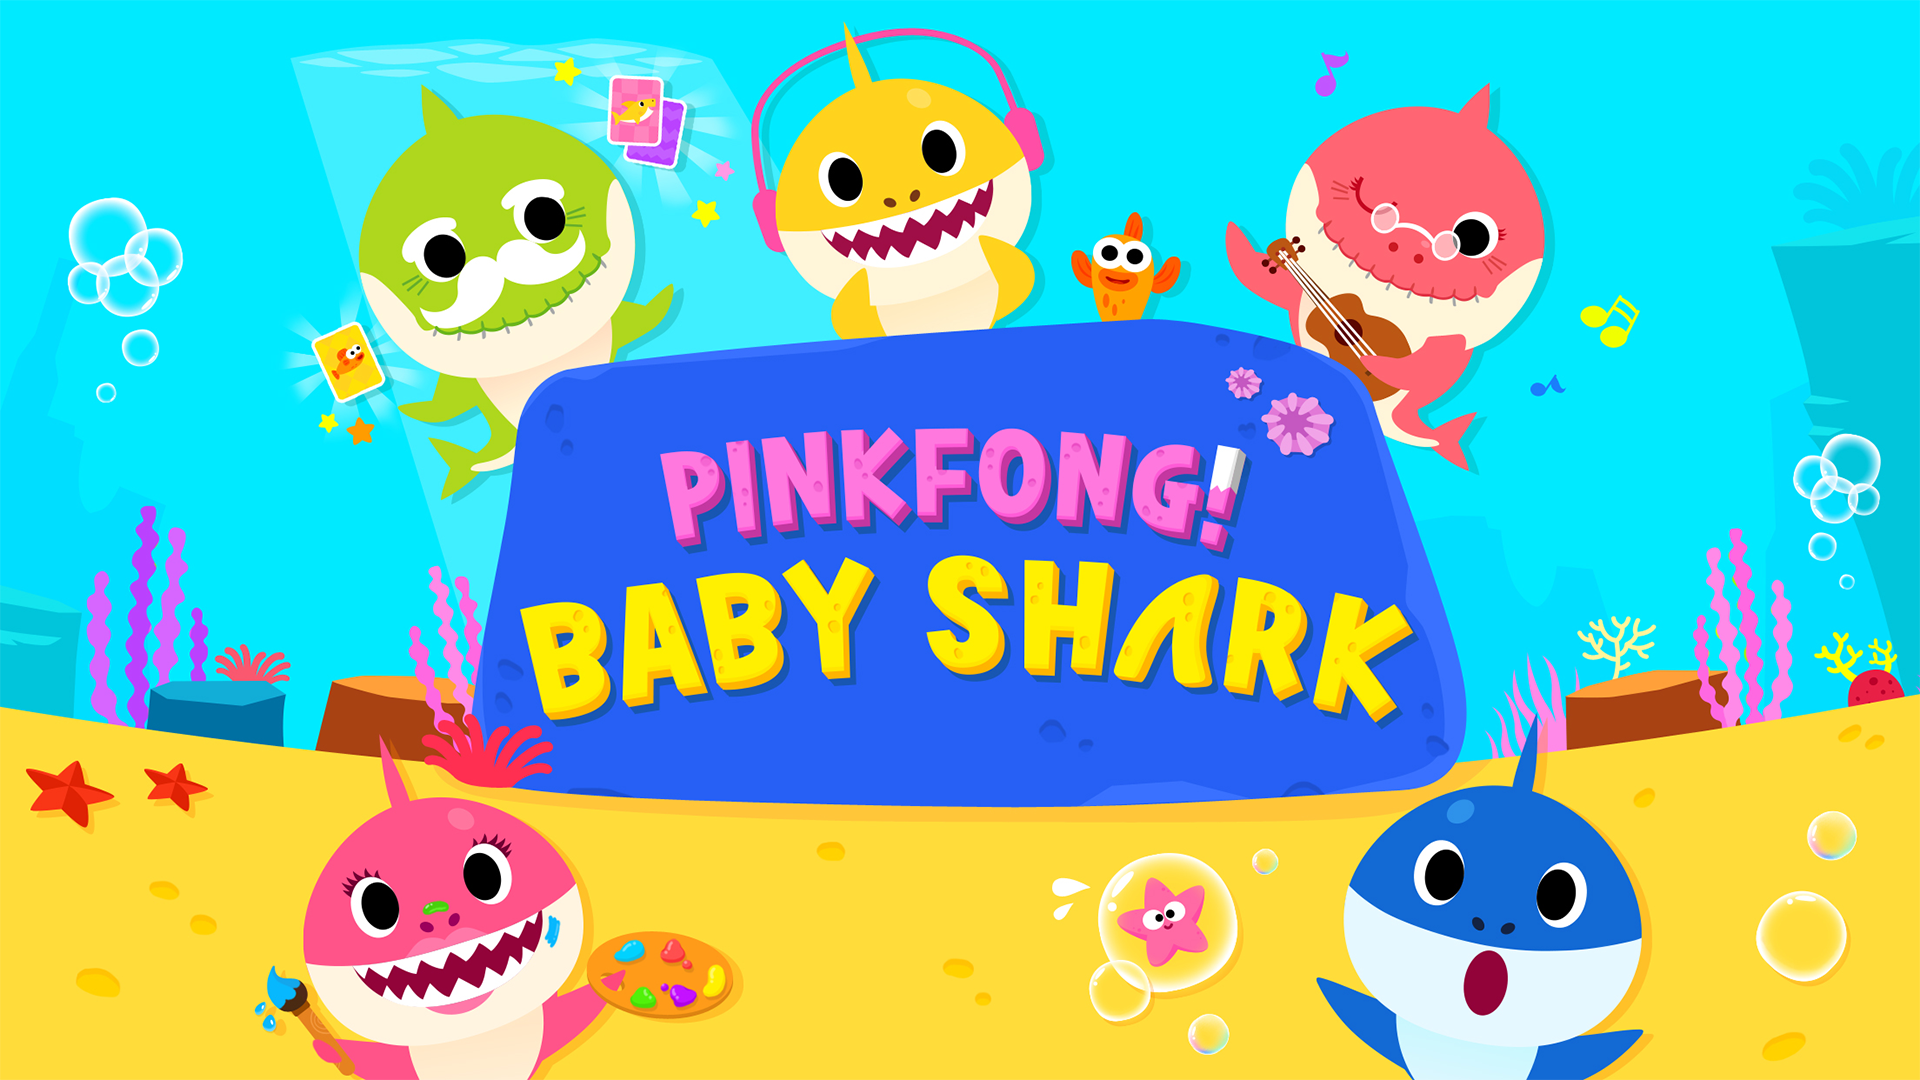 Pinkfong BABY SHARK font.